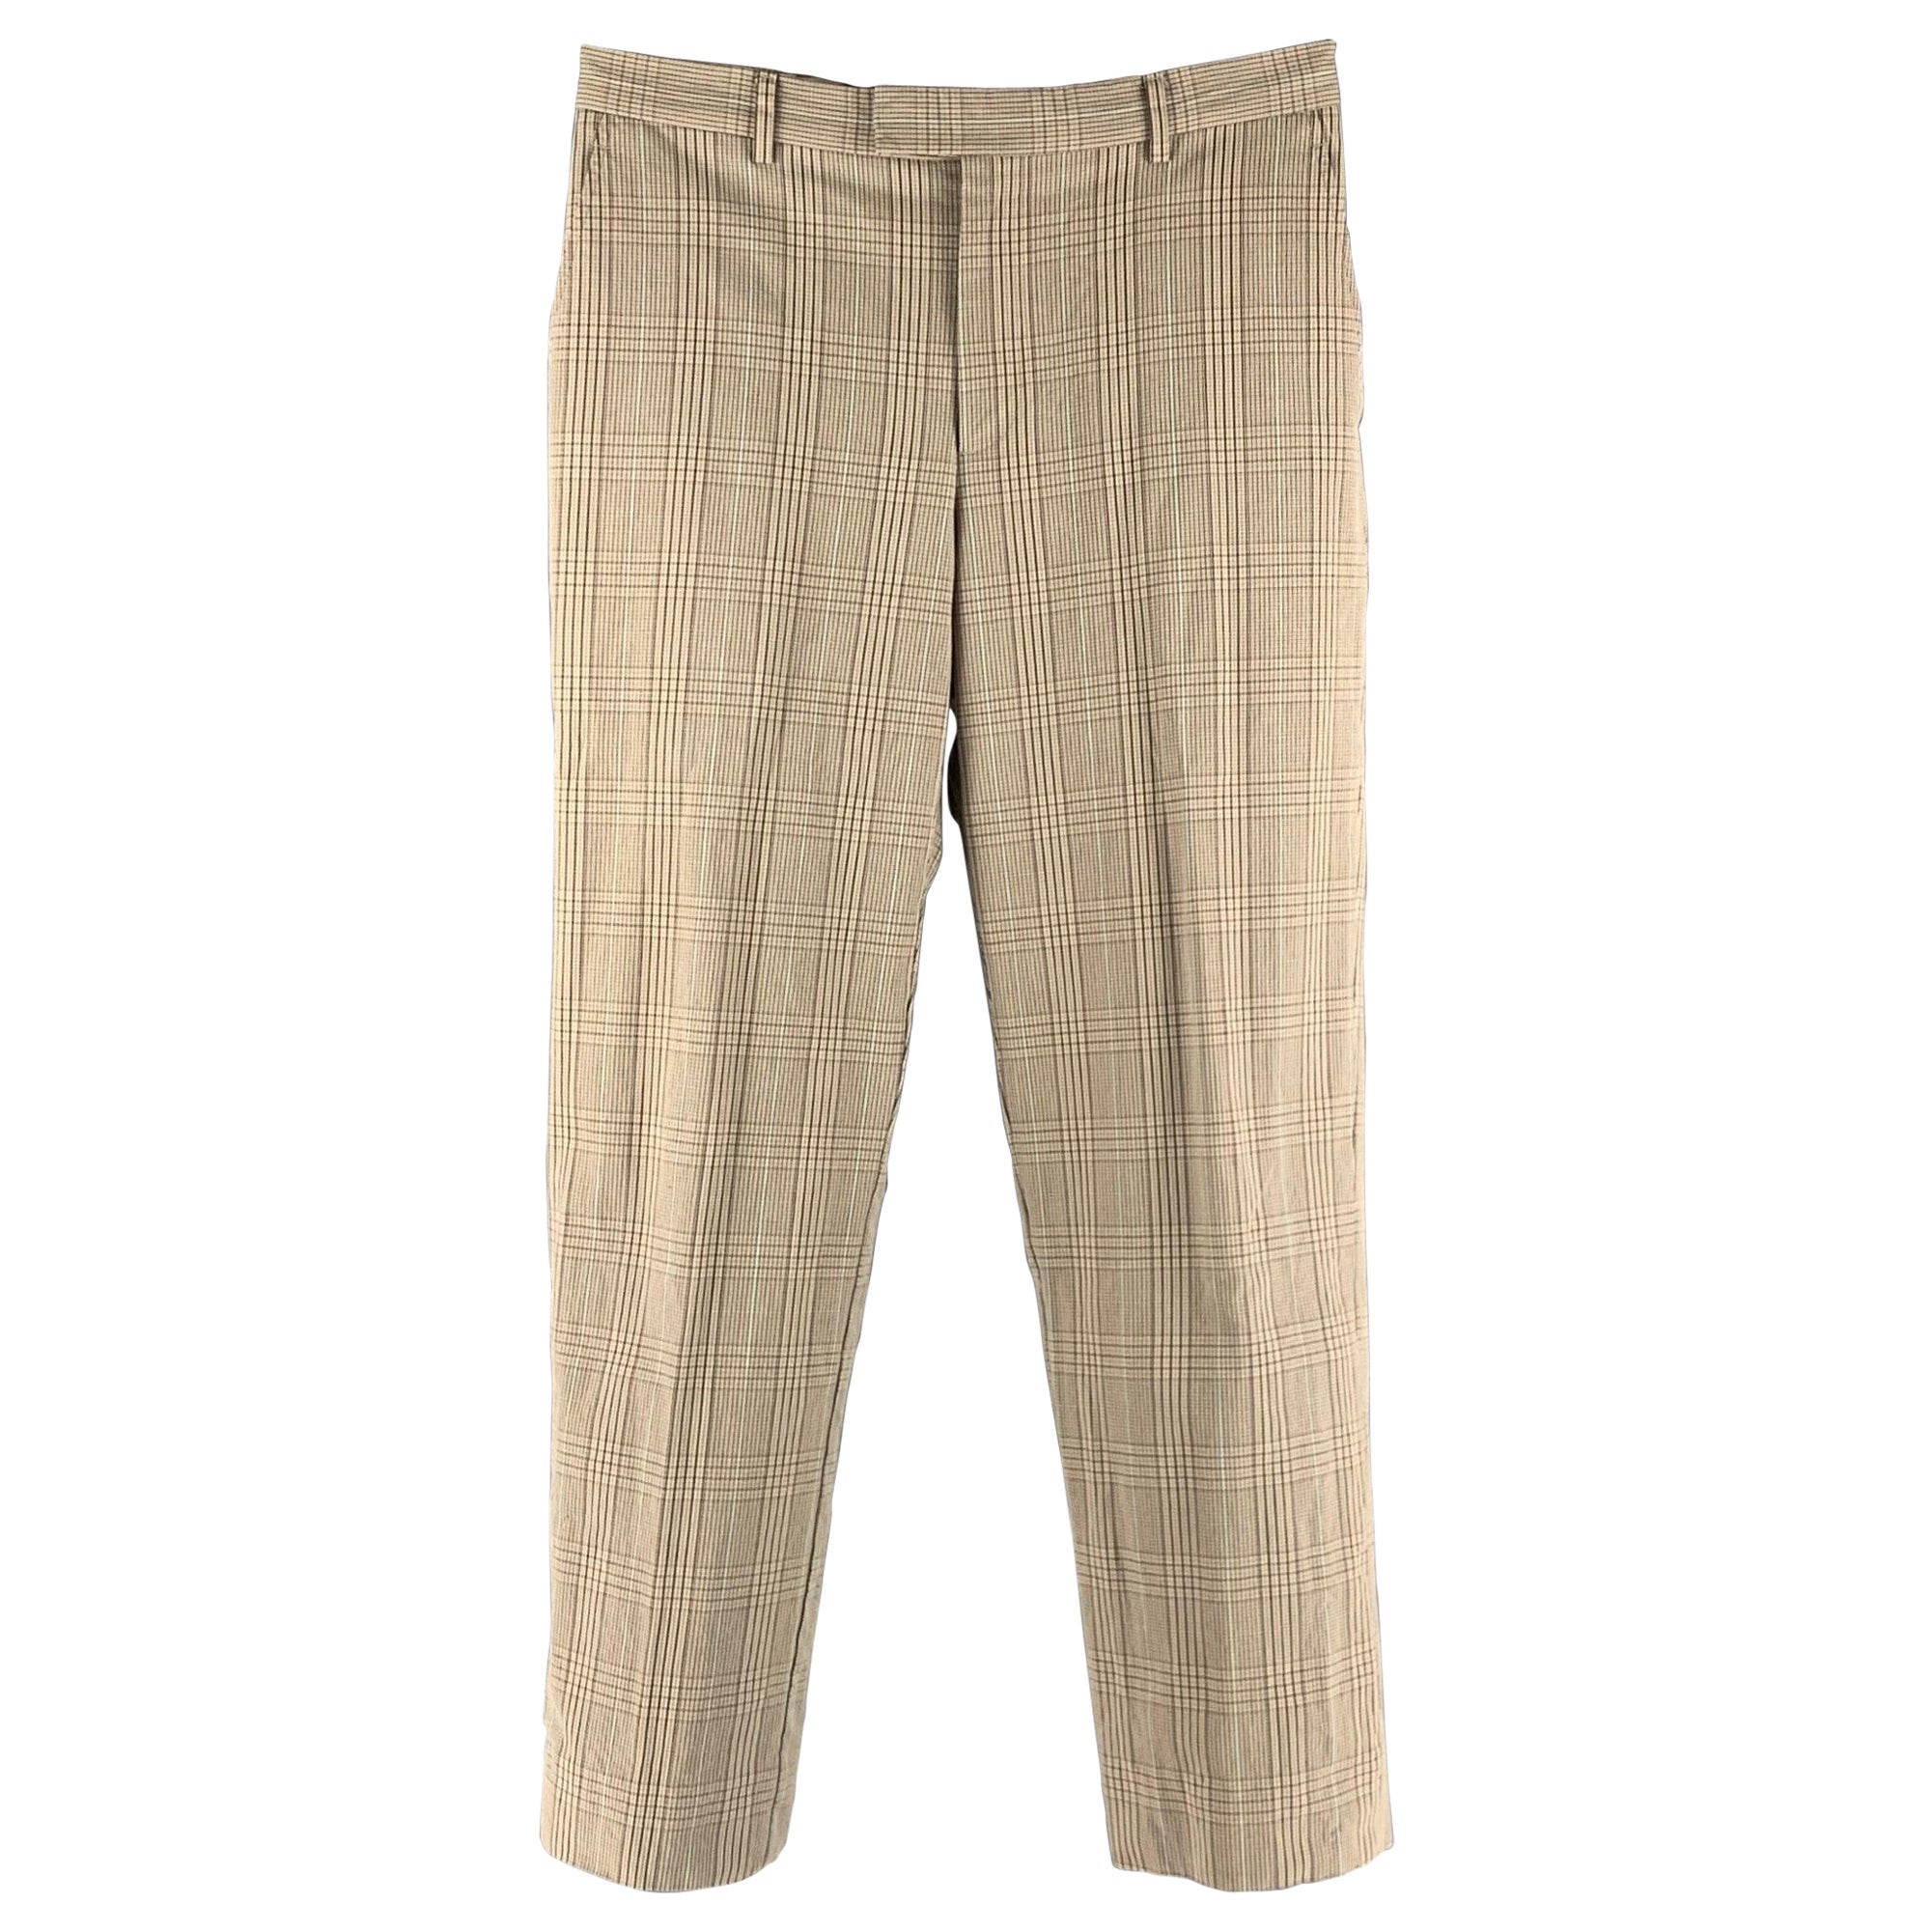 PAUL SMITH Size 30 Beige Brown Plaid Cotton Flat Front Dress Pants For Sale